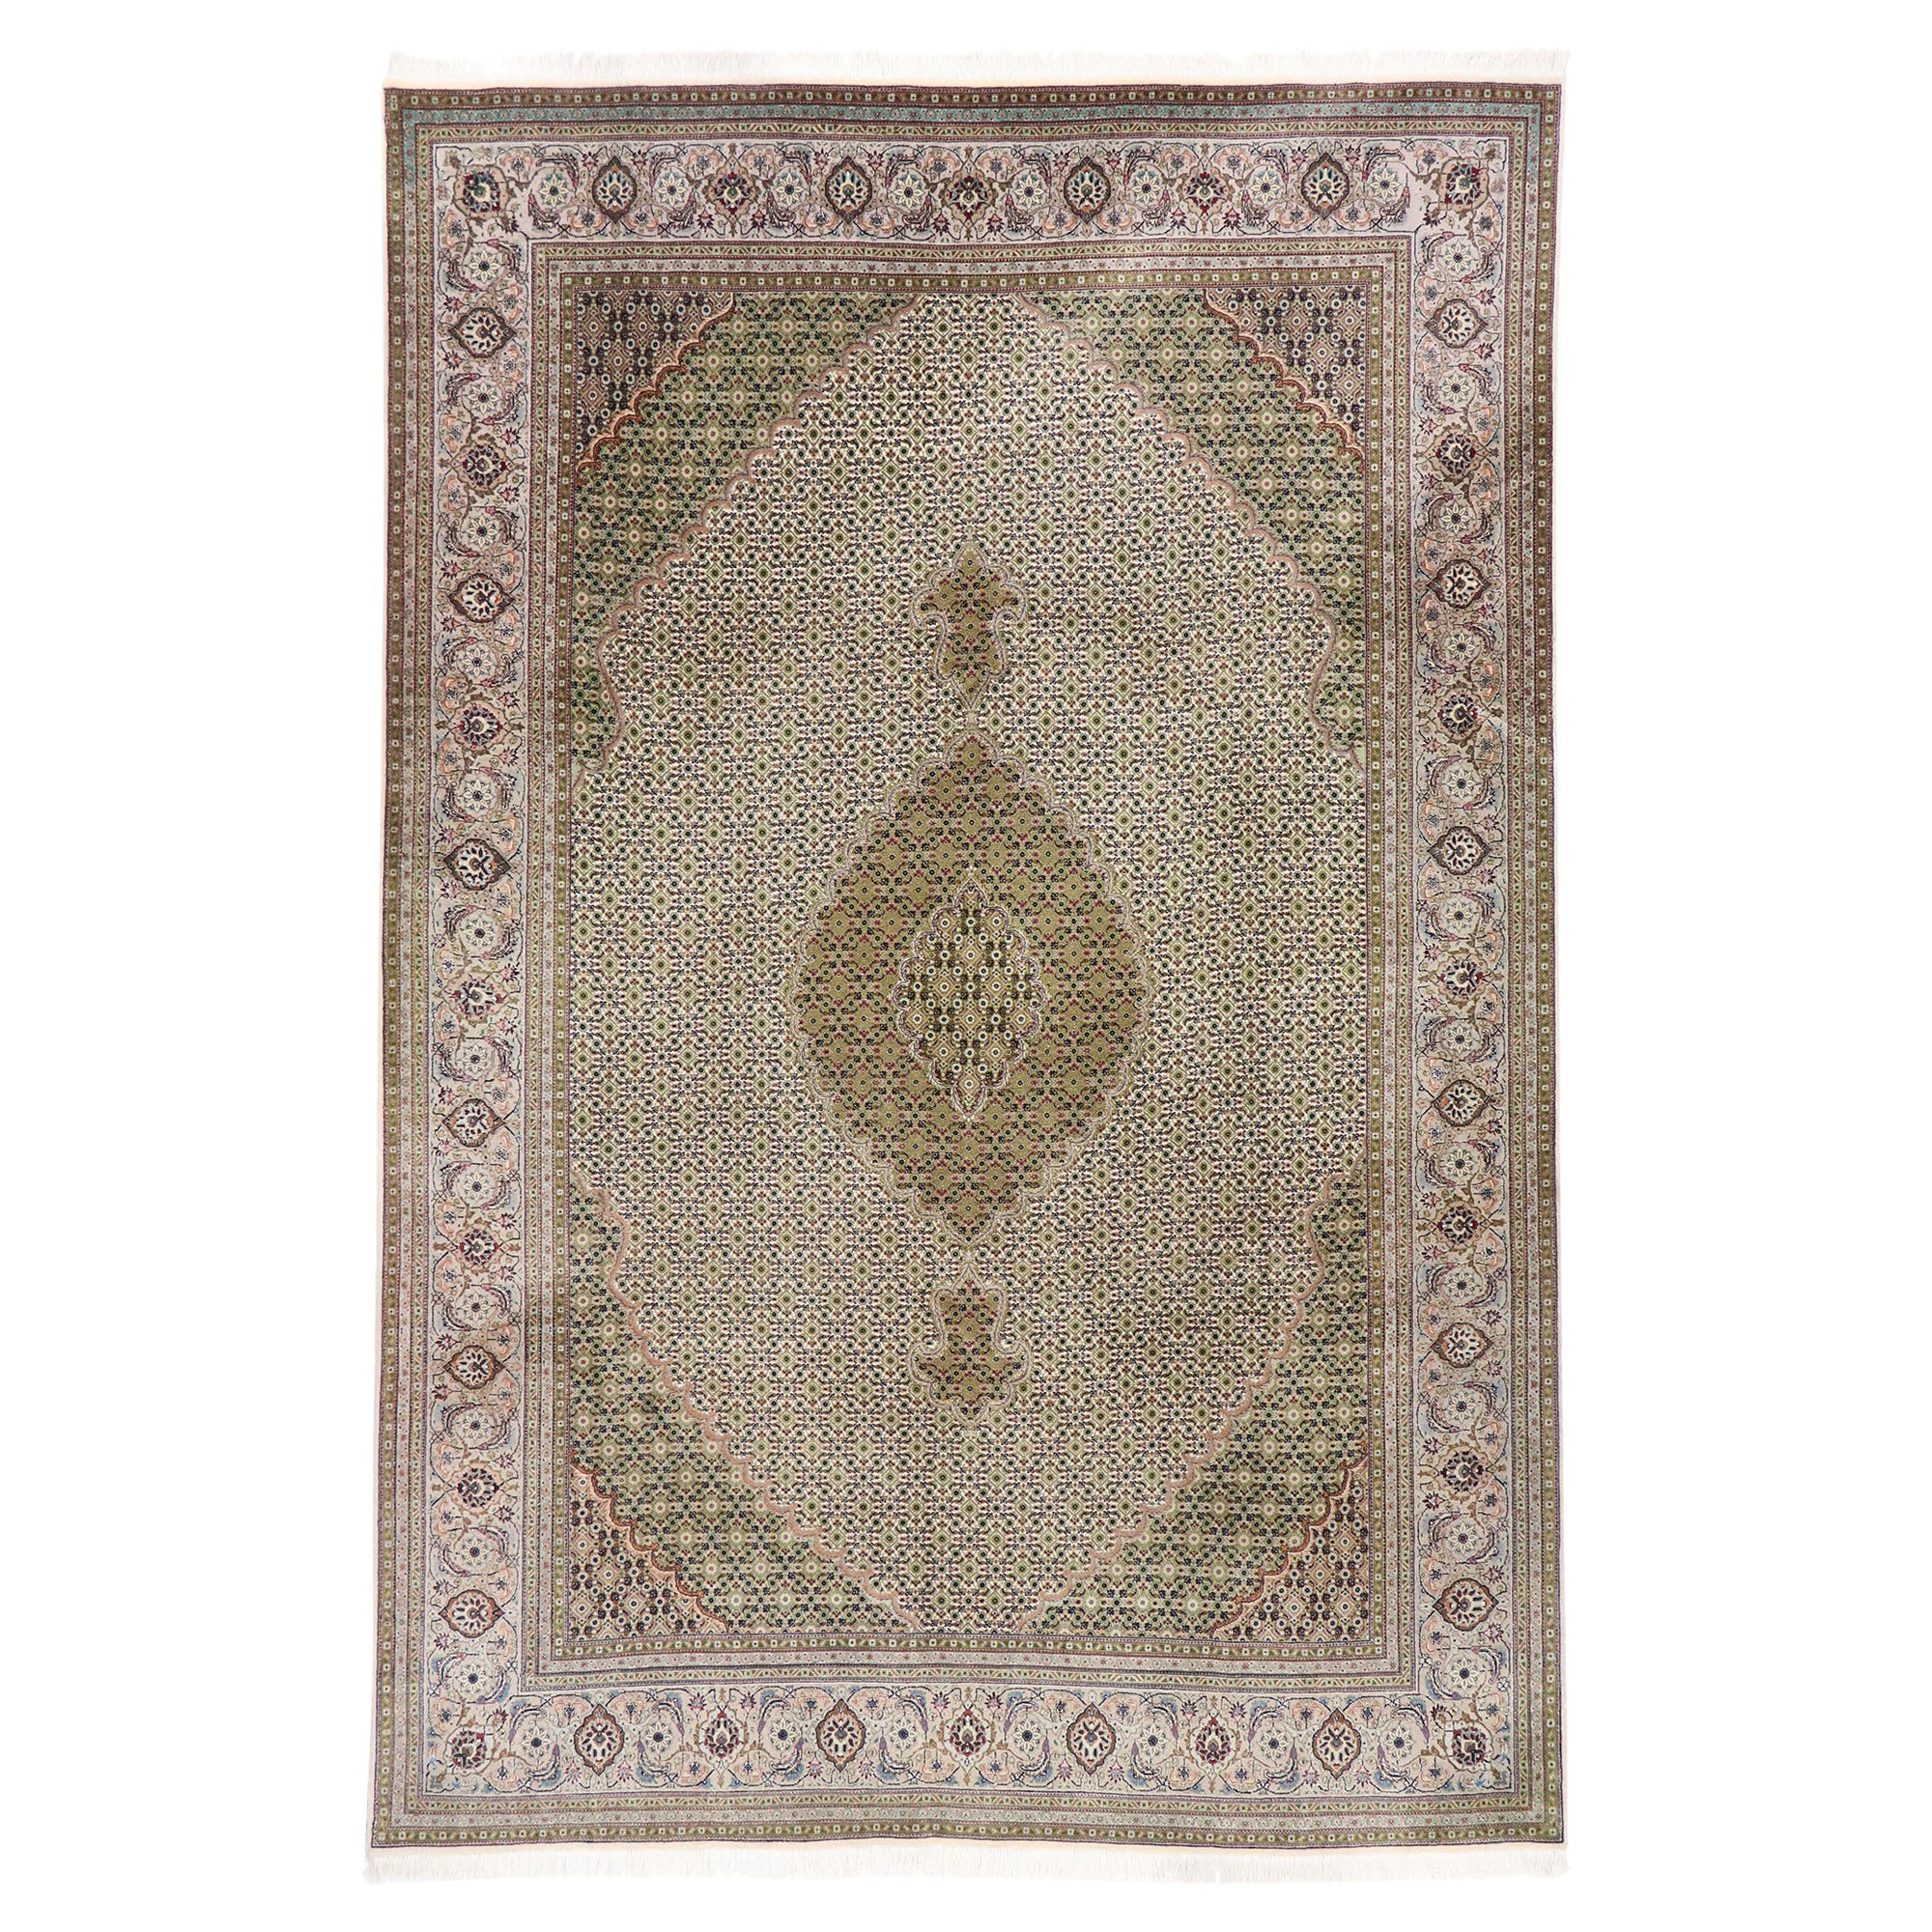 Persischer Mahi-Tabriz-Teppich im neoklassizistischen viktorianischen Stil